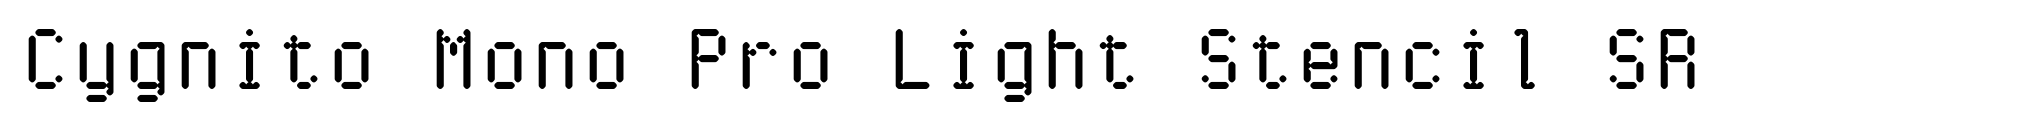 Cygnito Mono Pro Light Stencil SR image